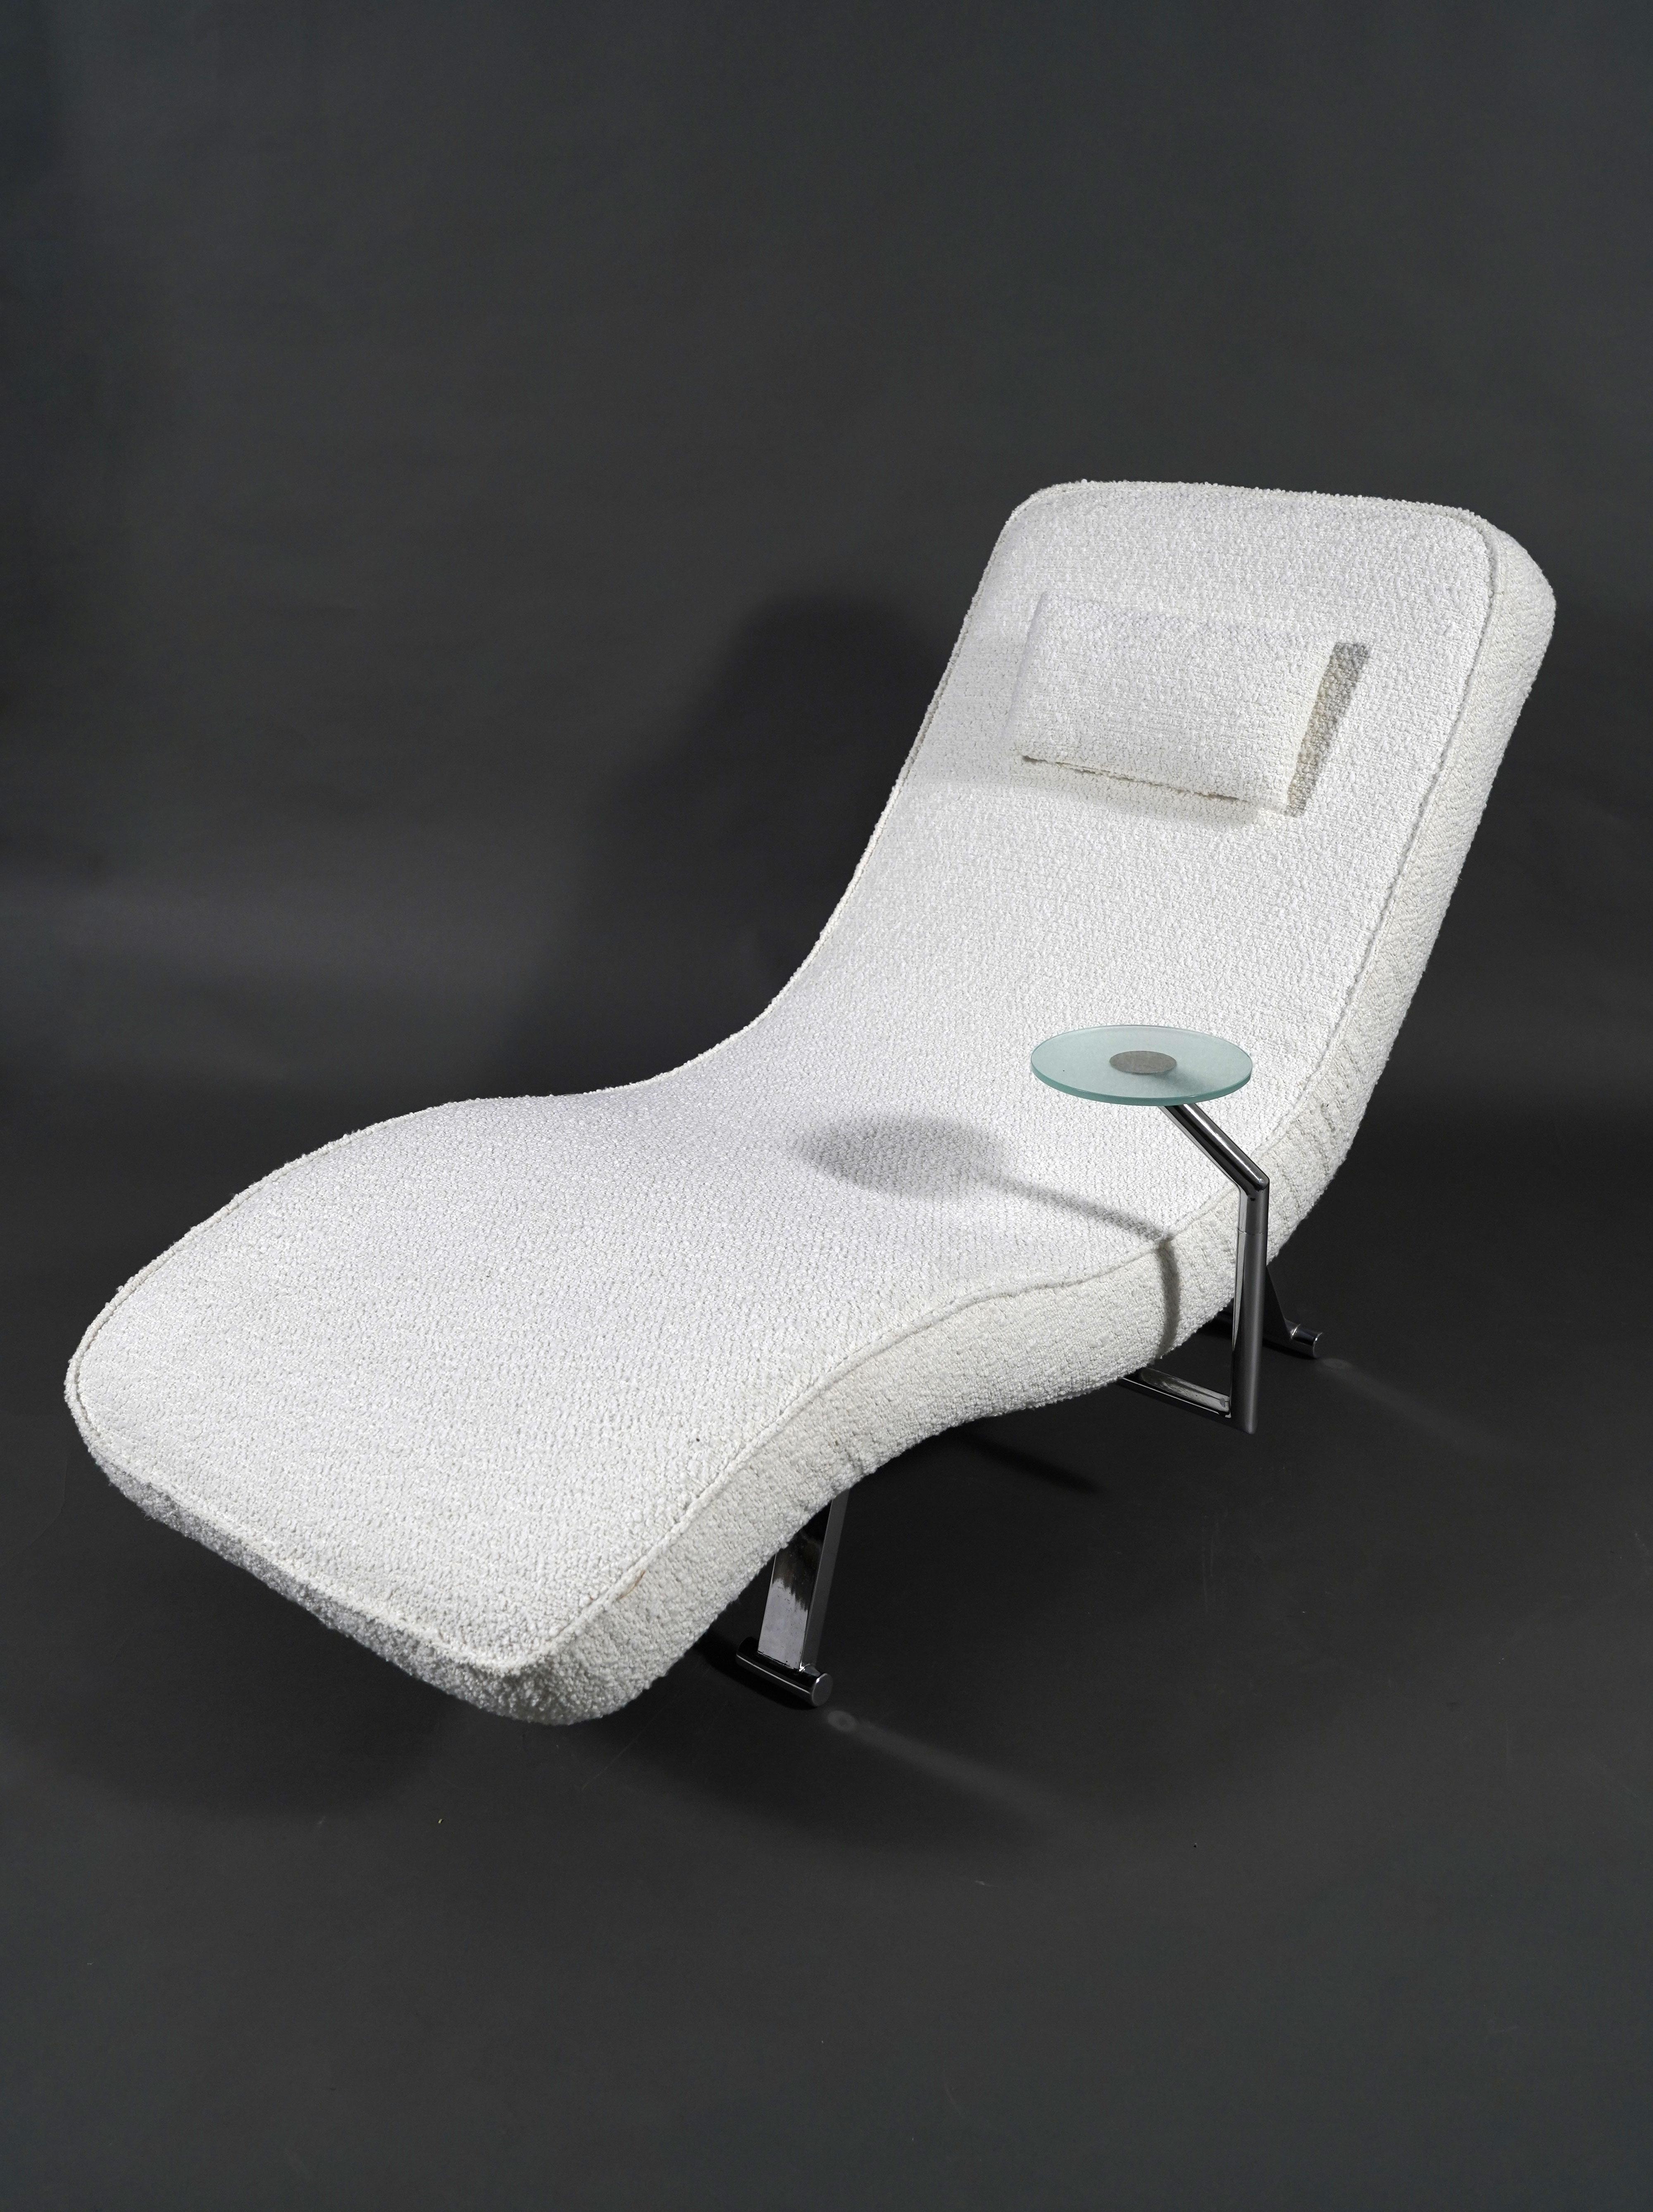 Belle chaise longue avec dossier réglable recouverte d'un tissu bouclé blanc cassé.
Complété par une table d'appoint rotative en verre.
Il repose sur une base en métal chromé.